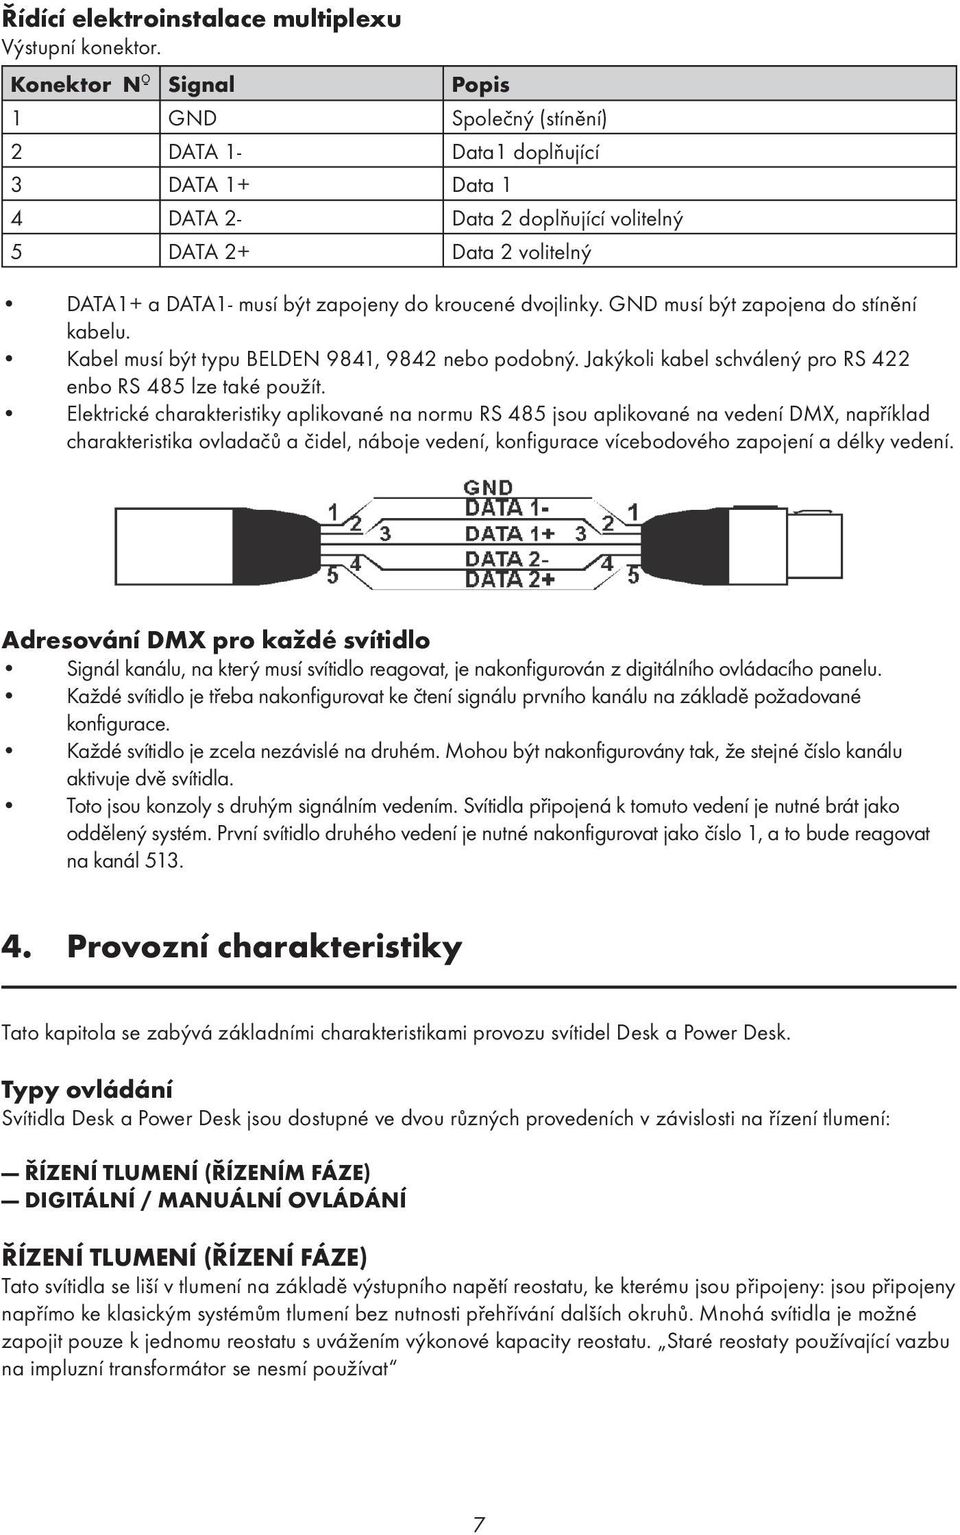 kroucené dvojlinky. GND musí být zapojena do stínění kabelu. Kabel musí být typu BELDEN 9841, 9842 nebo podobný. Jakýkoli kabel schválený pro RS 422 enbo RS 485 lze také použít.